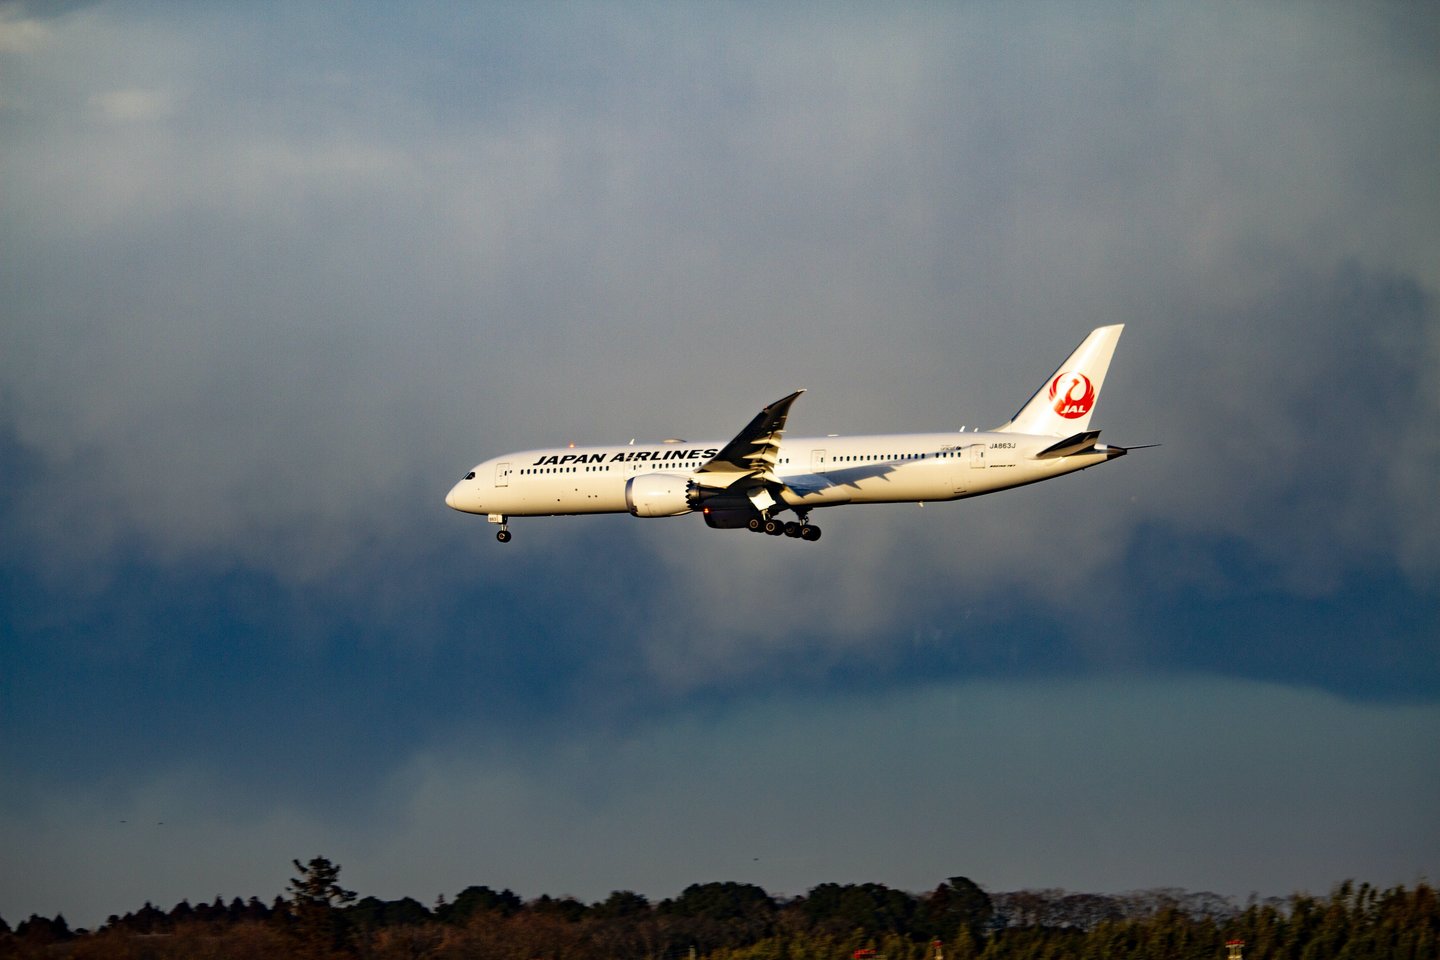 Lėktuvai dažomi baltai, nes ši spalva atspindi saulės šviesą ir padeda išvengti paviršiaus įkaitimo.<br>www.unsplash.com nuotr.